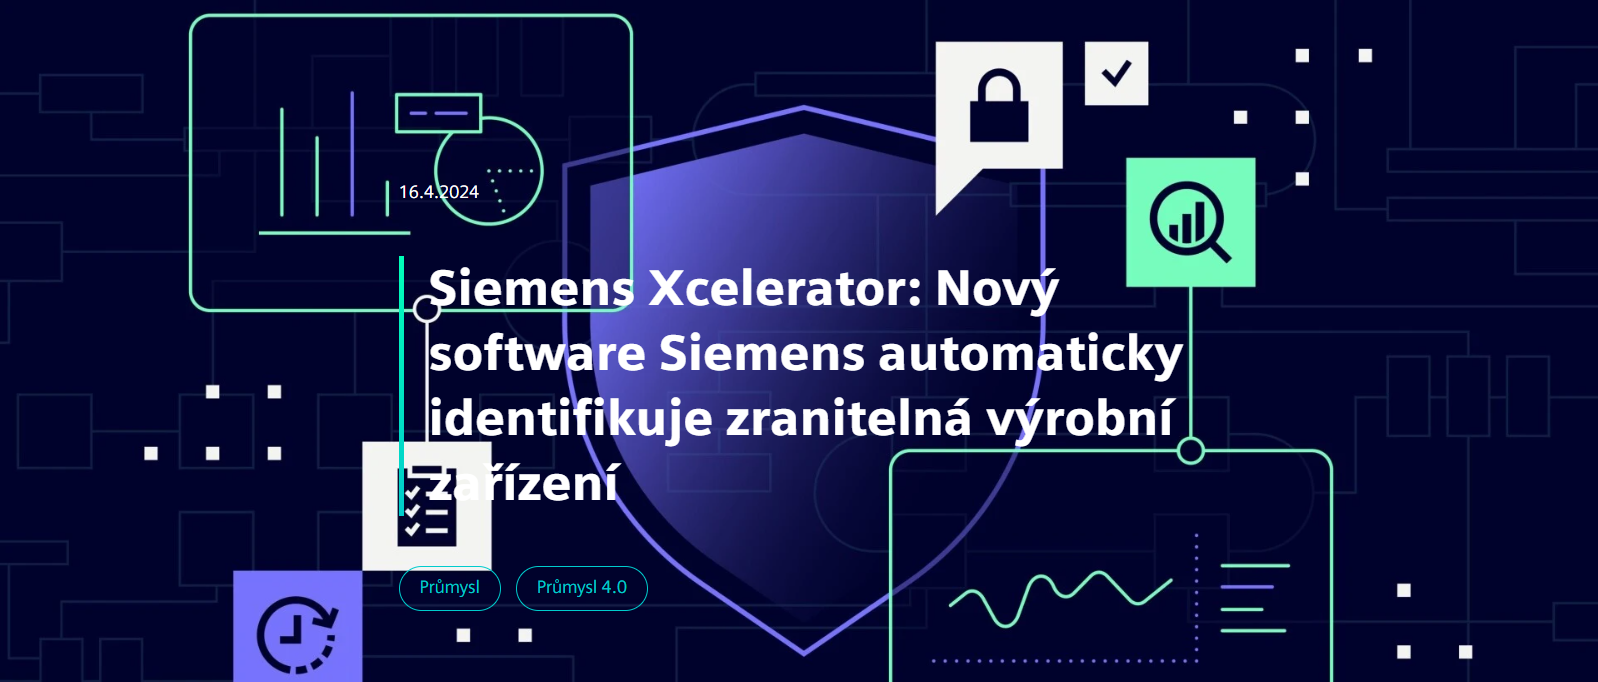 Siemens Xcelerator: Nový software Siemens automaticky identifikuje zranitelná výrobní zařízení